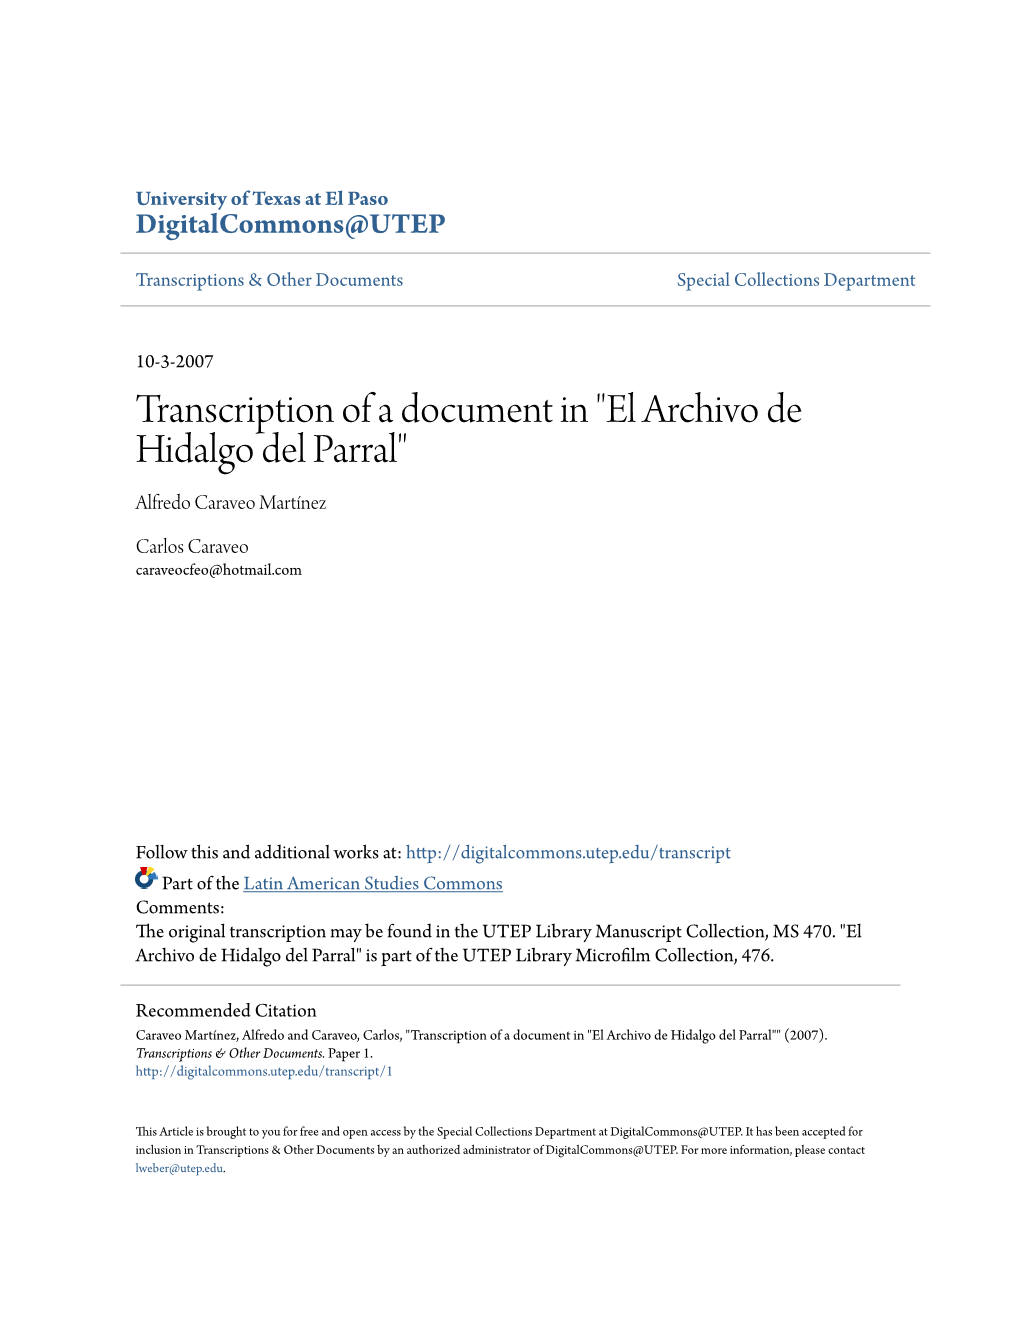 Transcription of a Document in "El Archivo De Hidalgo Del Parral" Alfredo Caraveo Martínez